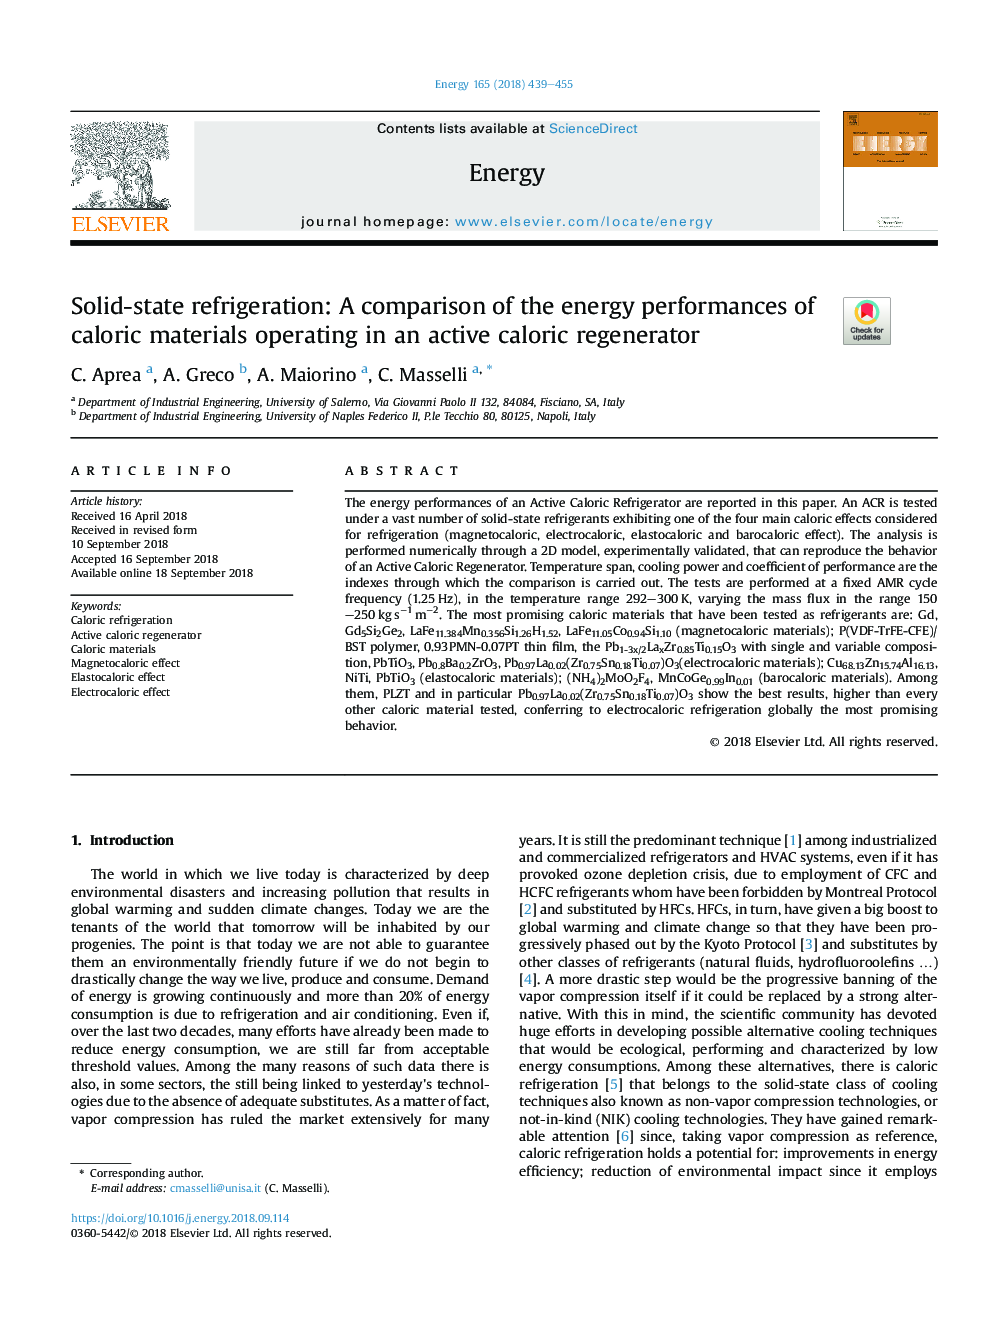 خنک کننده حالت جامد: مقایسه عملکرد انرژی کالری که در یک بازسازی کننده فعال کالری فعال است